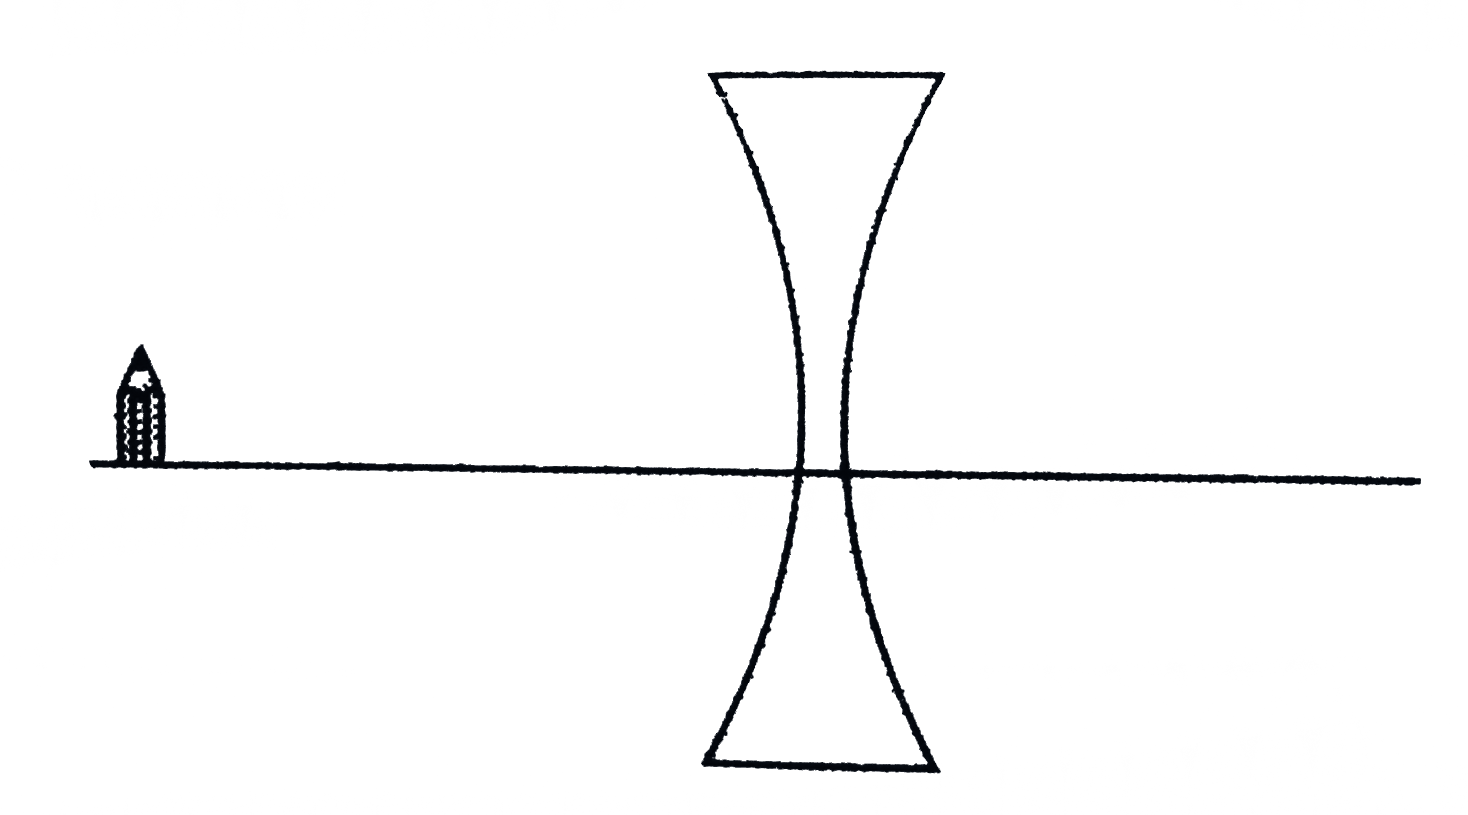 diverging lens equation